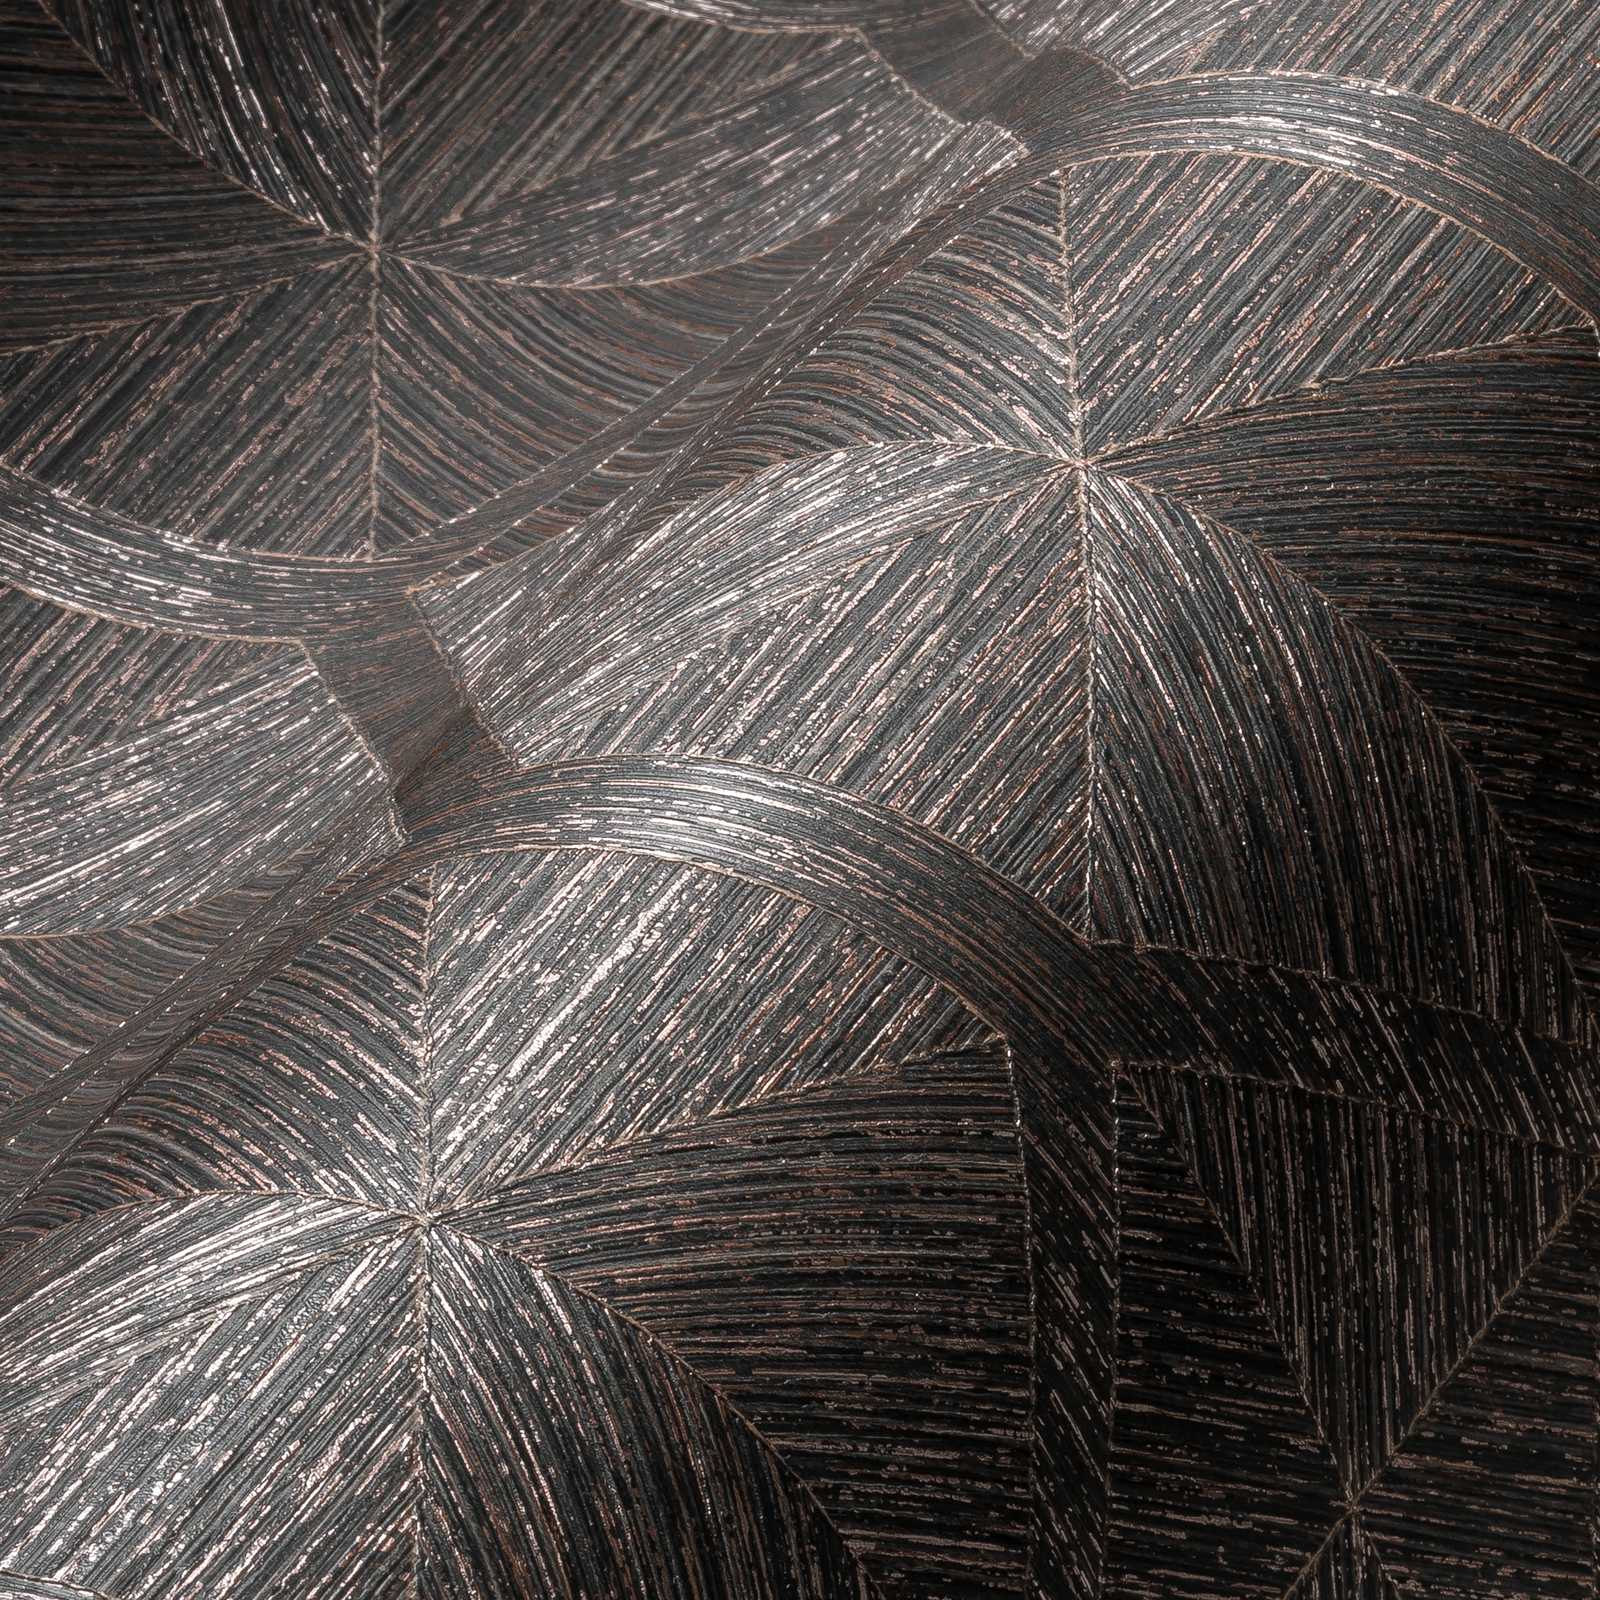             behang grafisch patroon houtlook met metallic effect - bruin, metallic
        